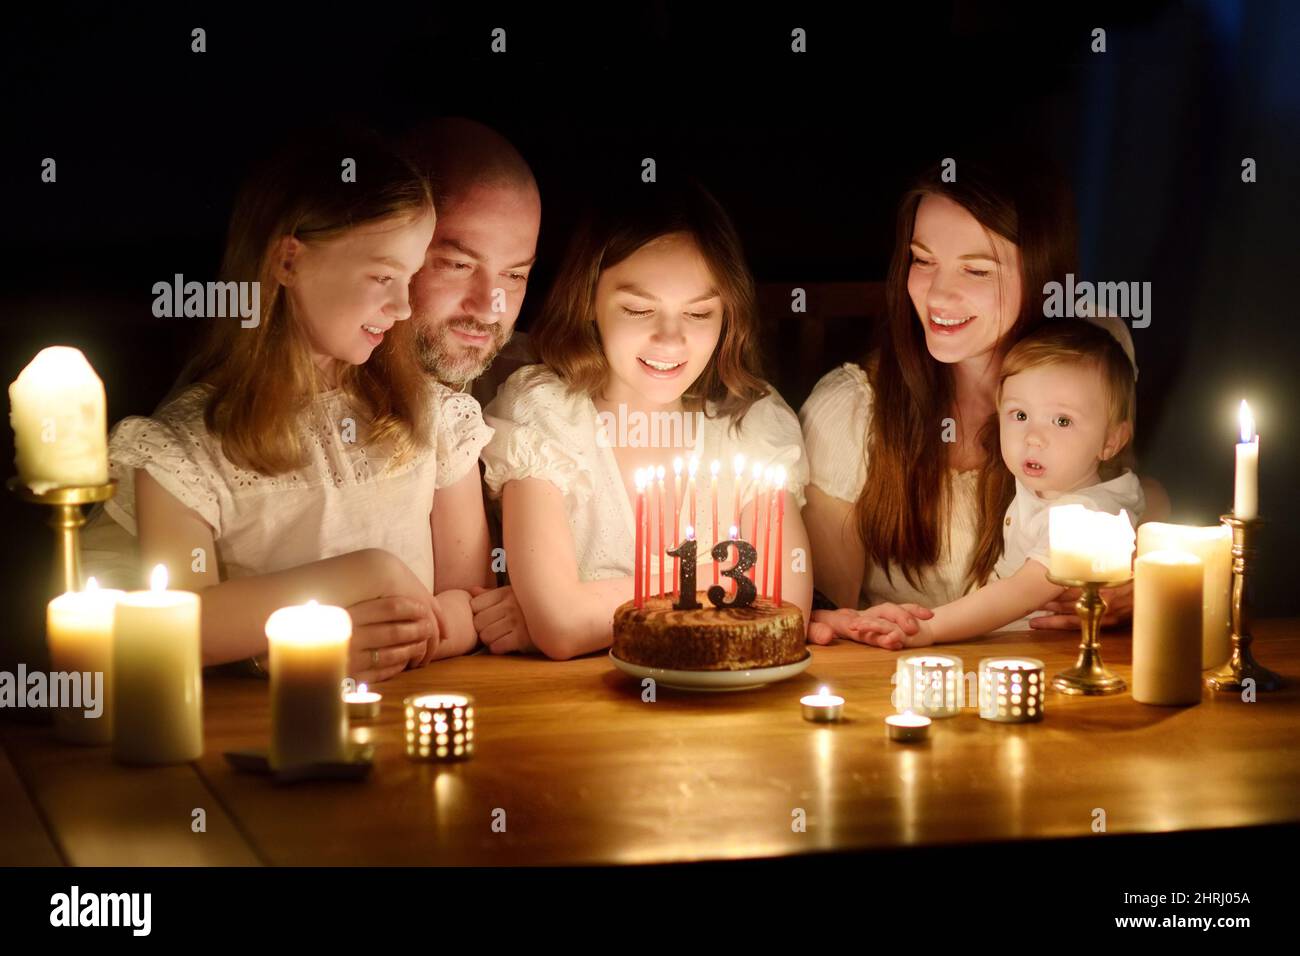 Nettes dreizehn Jahre altes Mädchen, das einen Wunsch macht, bevor es Kerzen auf ihren Geburtstagskuchen bläst. Fünfköpfige Familie feiert Geburtstag von Kindern. Geburtstagstradition Stockfoto